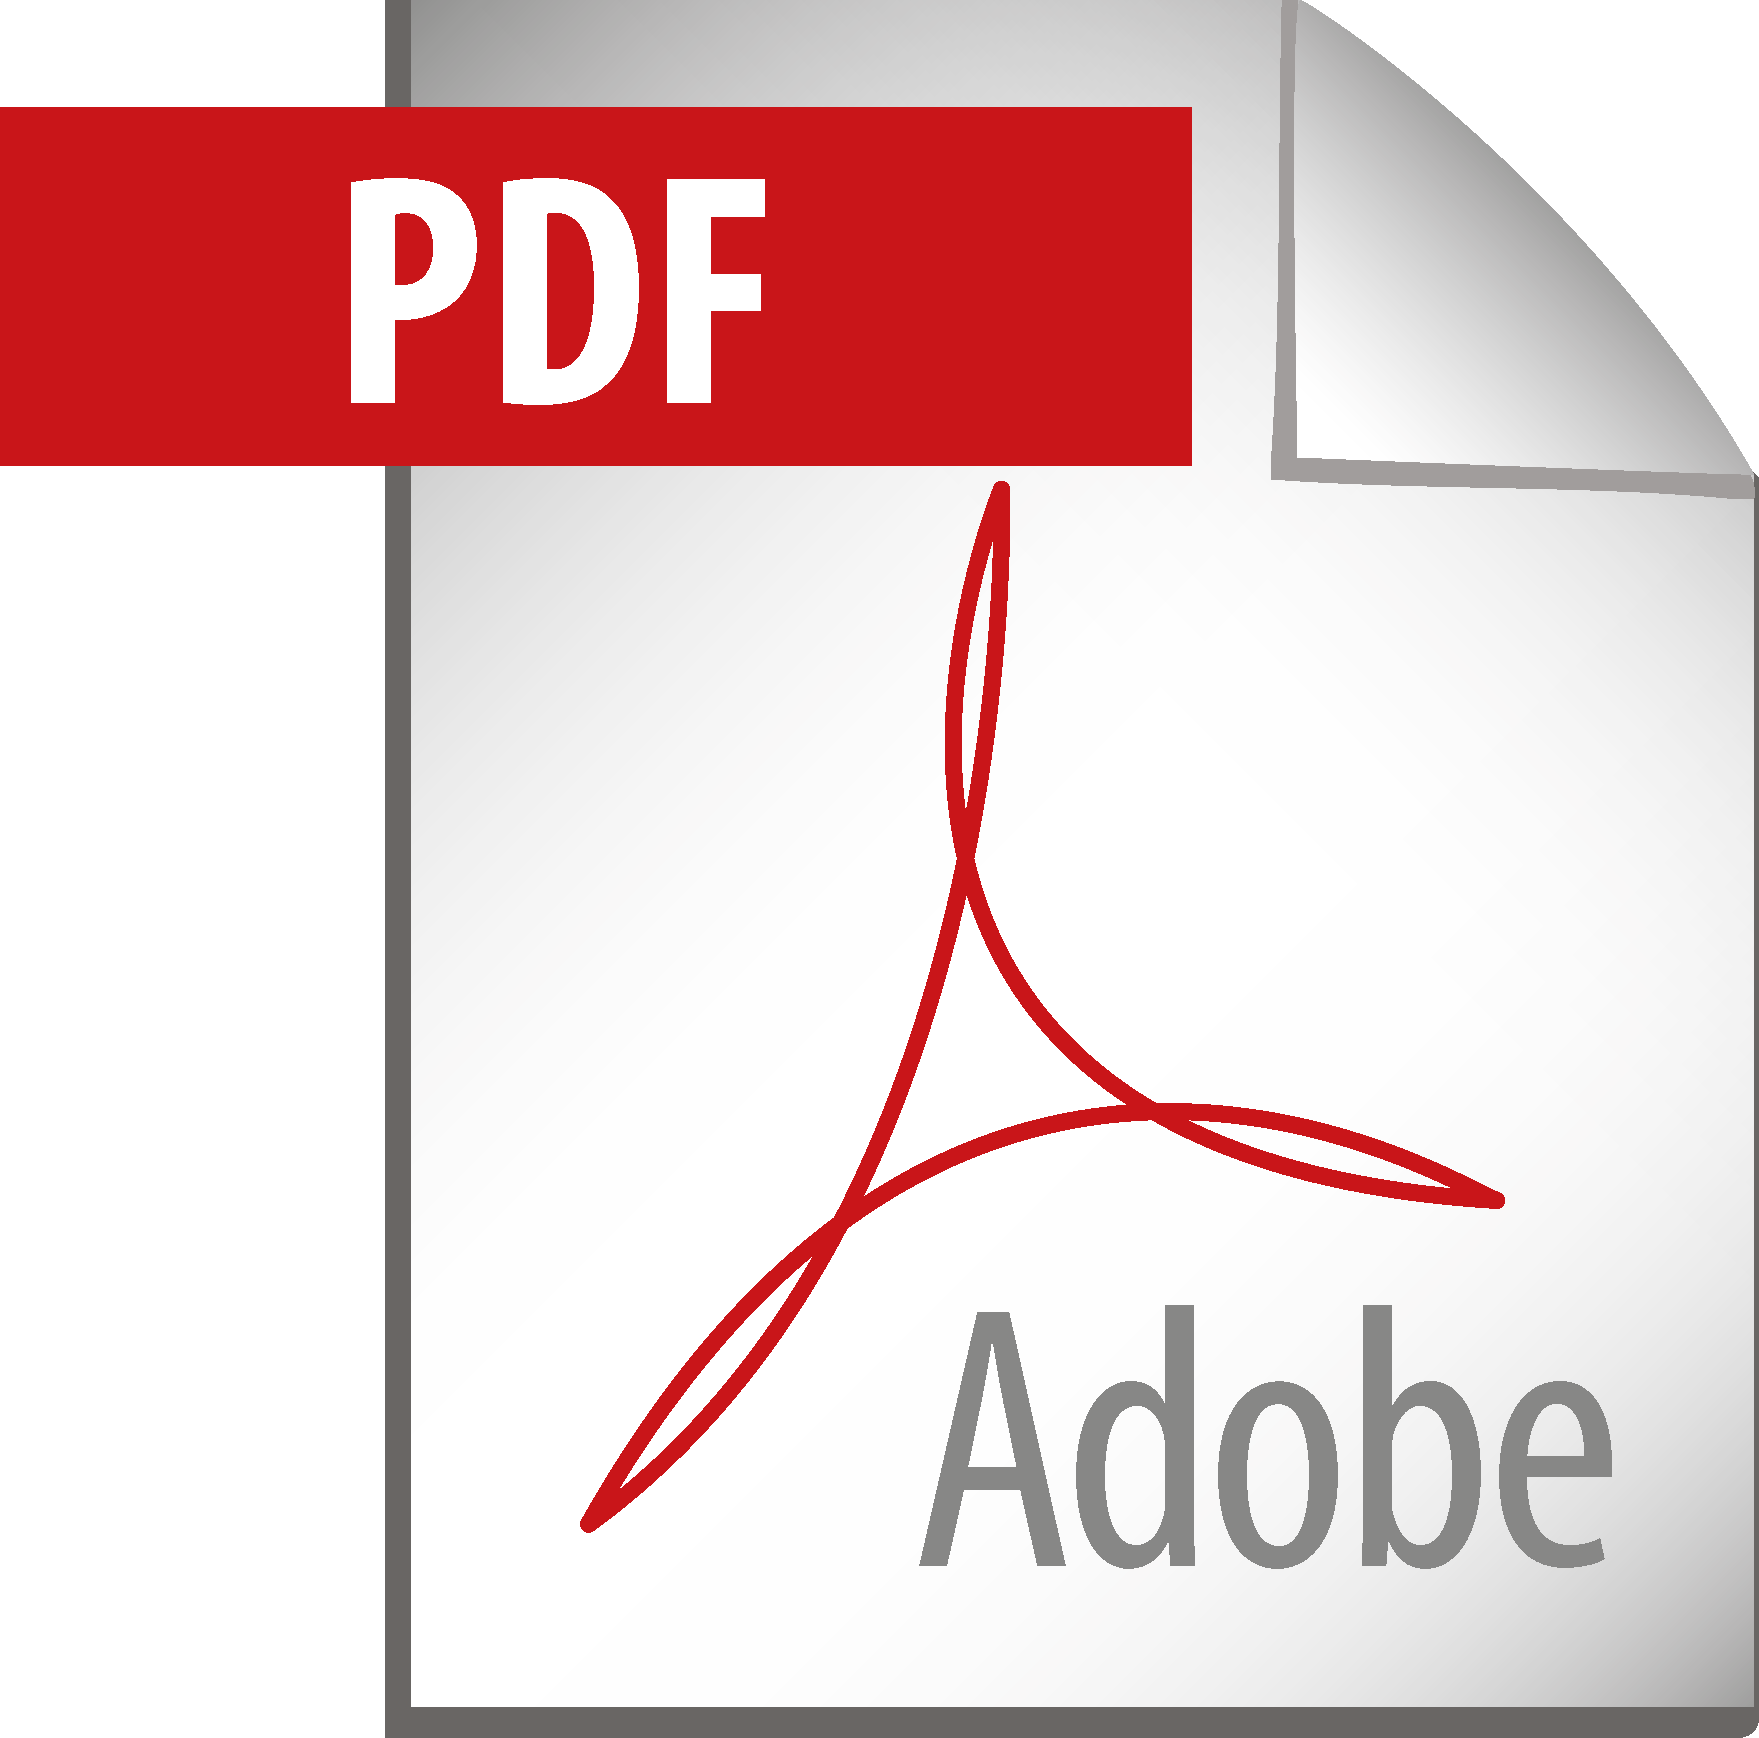 Adobe, File, Logo, Logos, Pdf